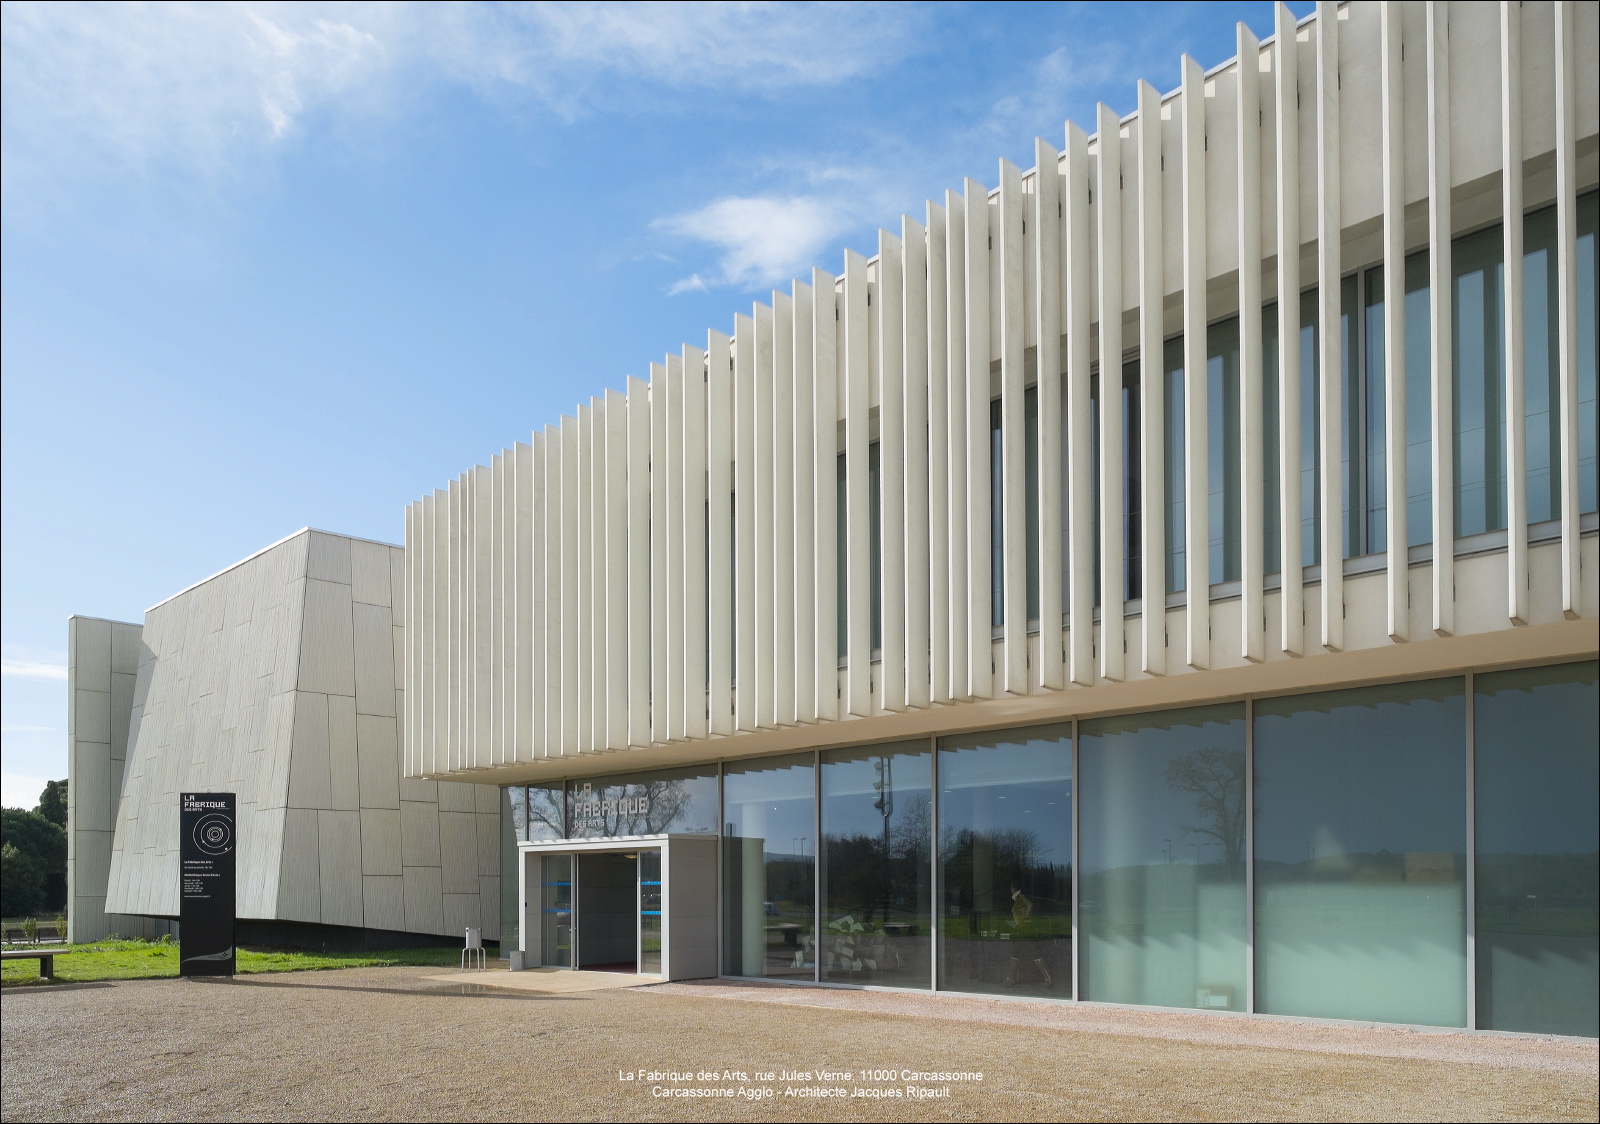 La Fabrique des Arts abritant le Conservatoire et l'Ecole des Beaux-Arts de Carcassonne